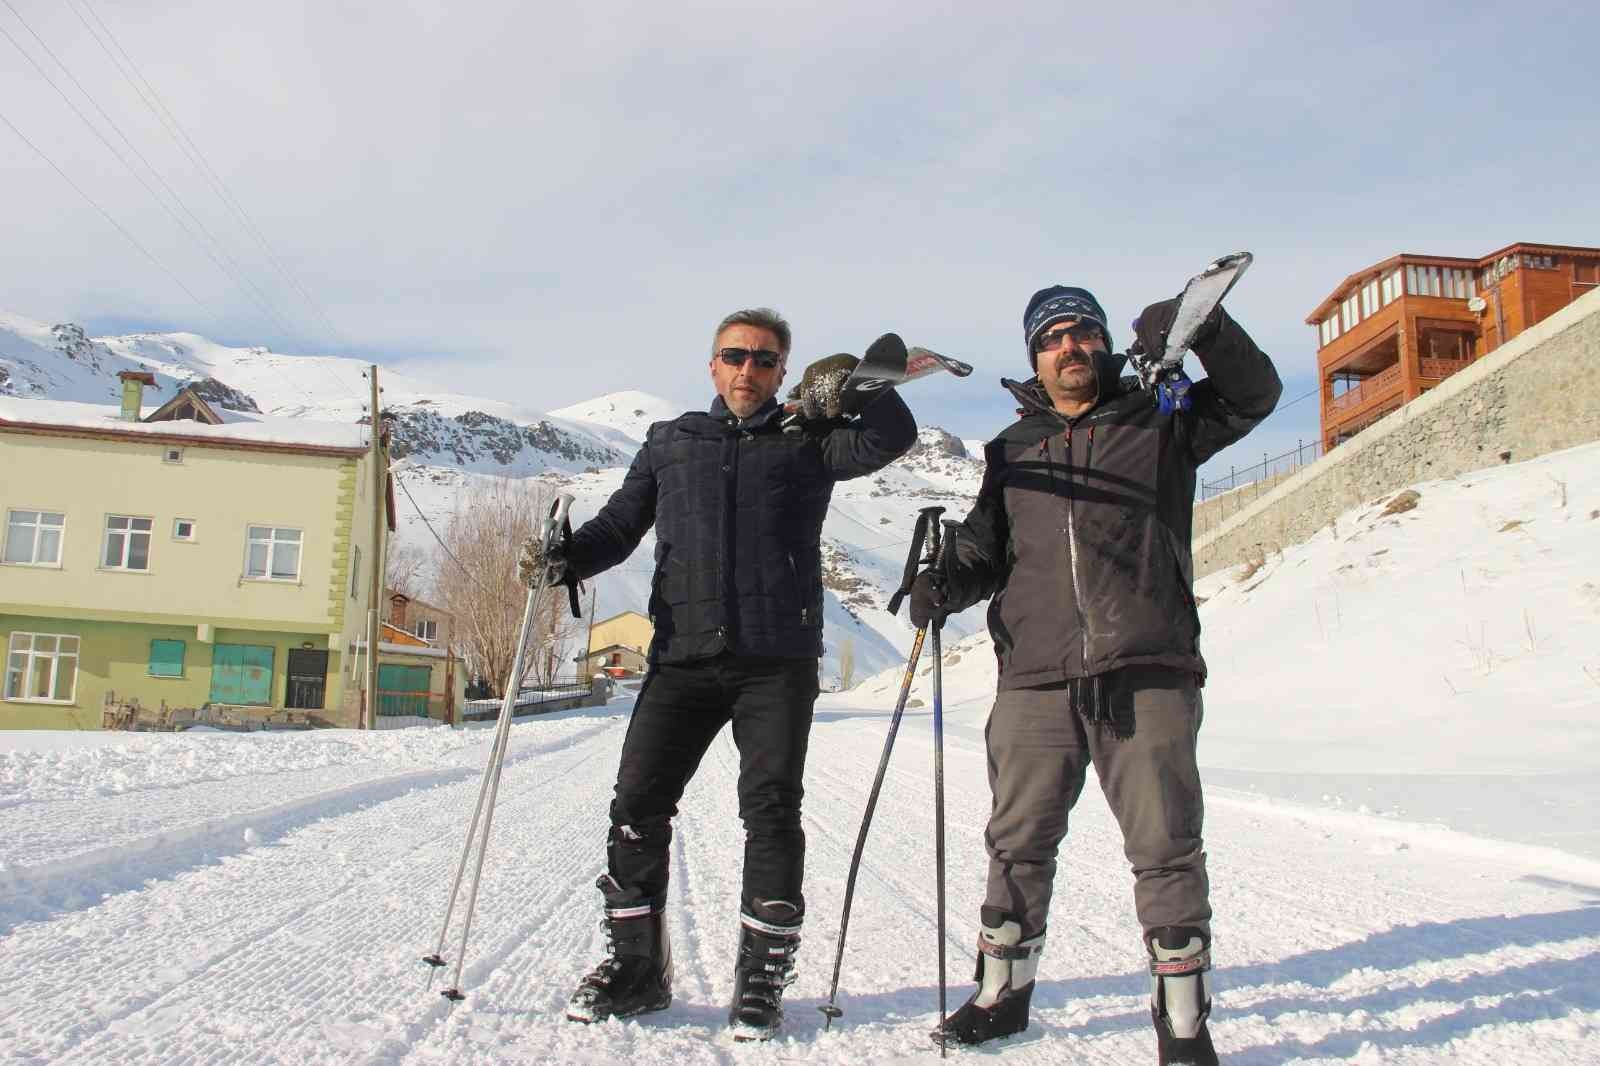 İspir Doğa Sporları Derneği üyeleri Ovit Dağı’nda kayak yaptı